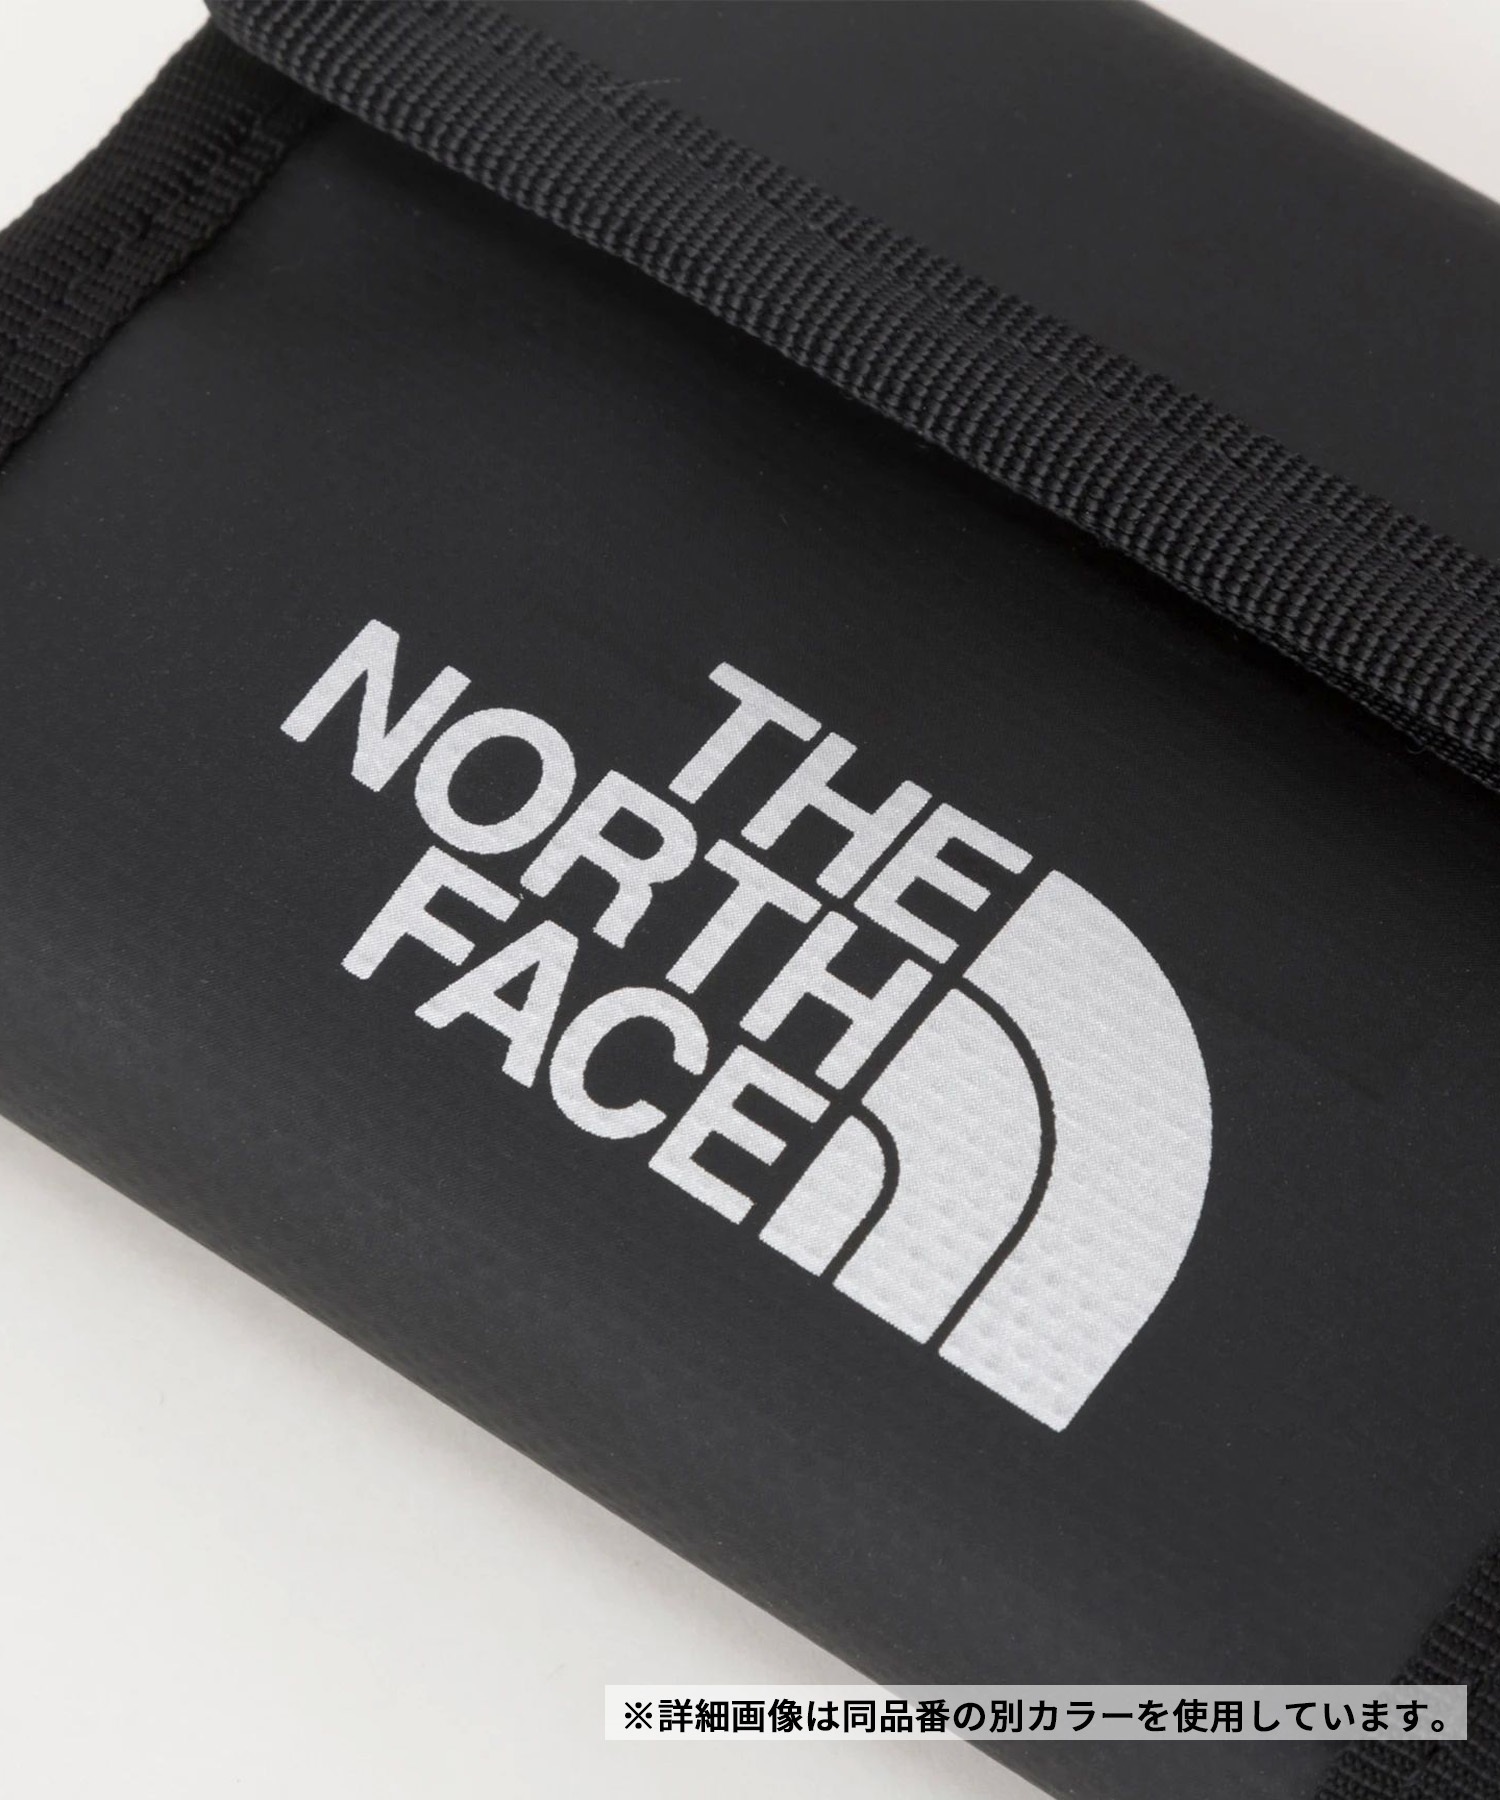 THE NORTH FACE/ザ・ノース・フェイス BC Wallet Mini BCワレットミニ 財布 ウォレット 二つ折り 折りたたみ NM82320 UC(UC-FREE)